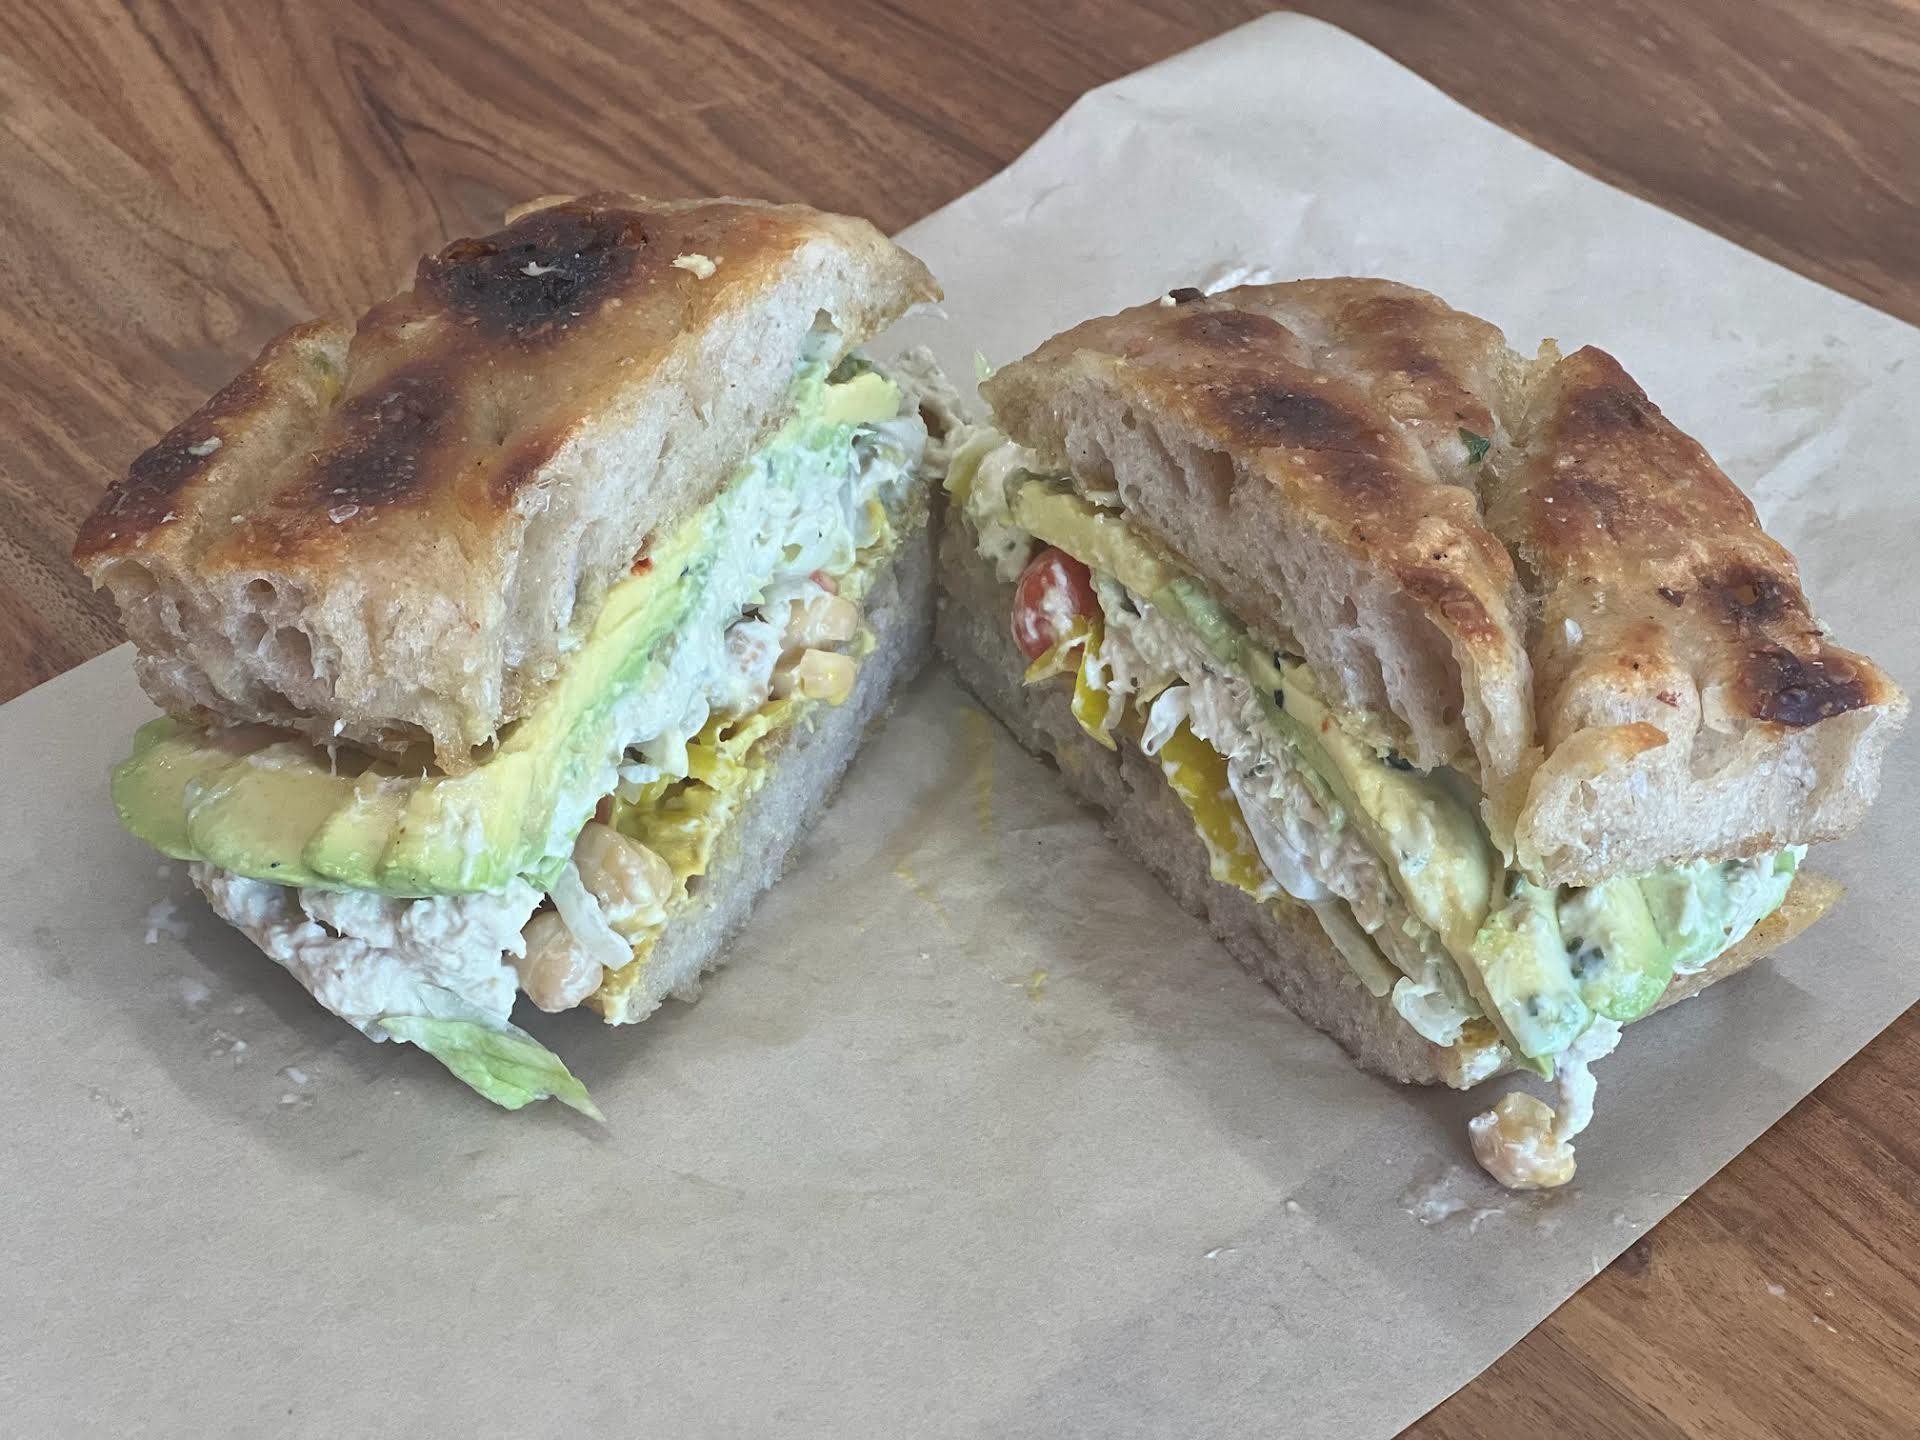 The Fairfax Tuna Sandwich